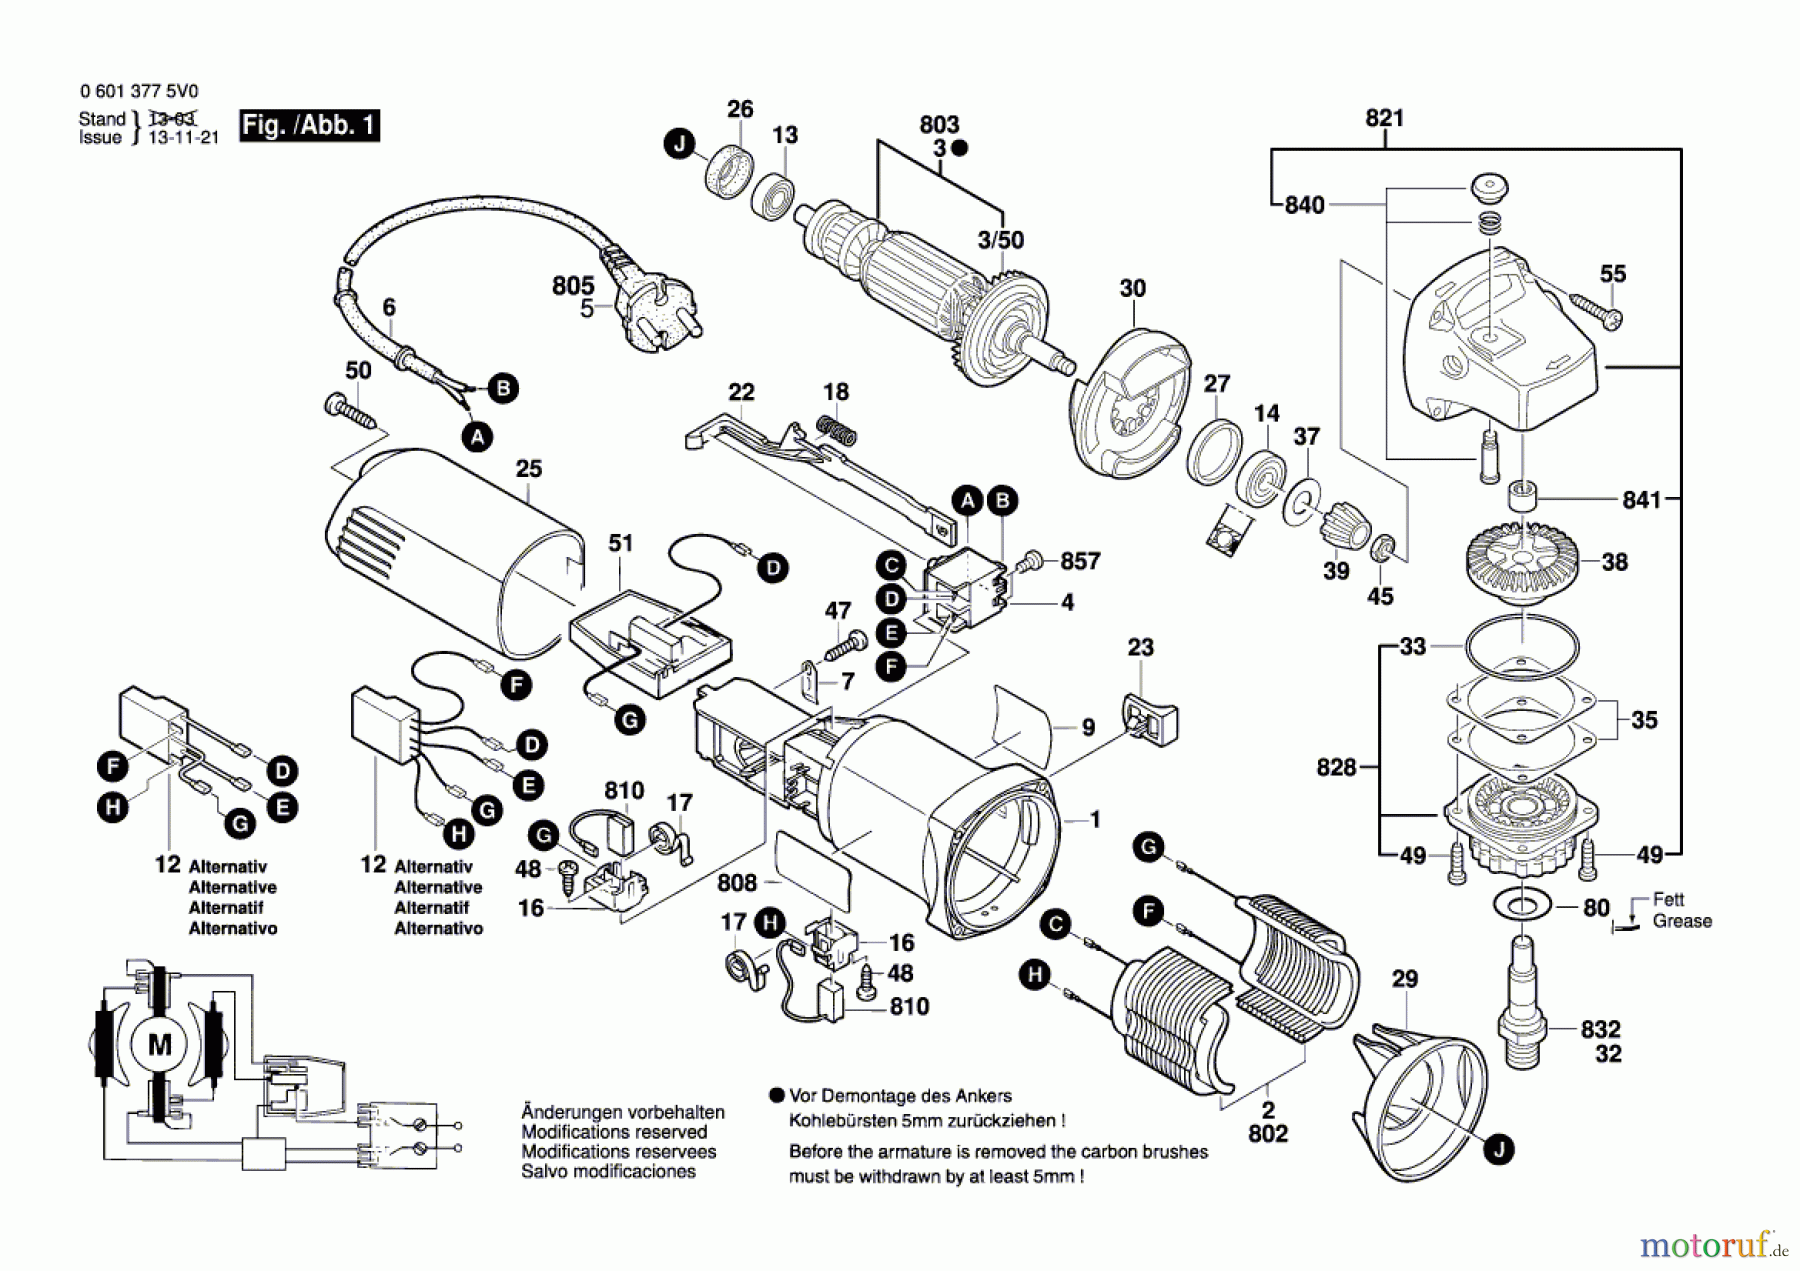  Bosch Werkzeug Winkelschleifer GWS 780 C Seite 1